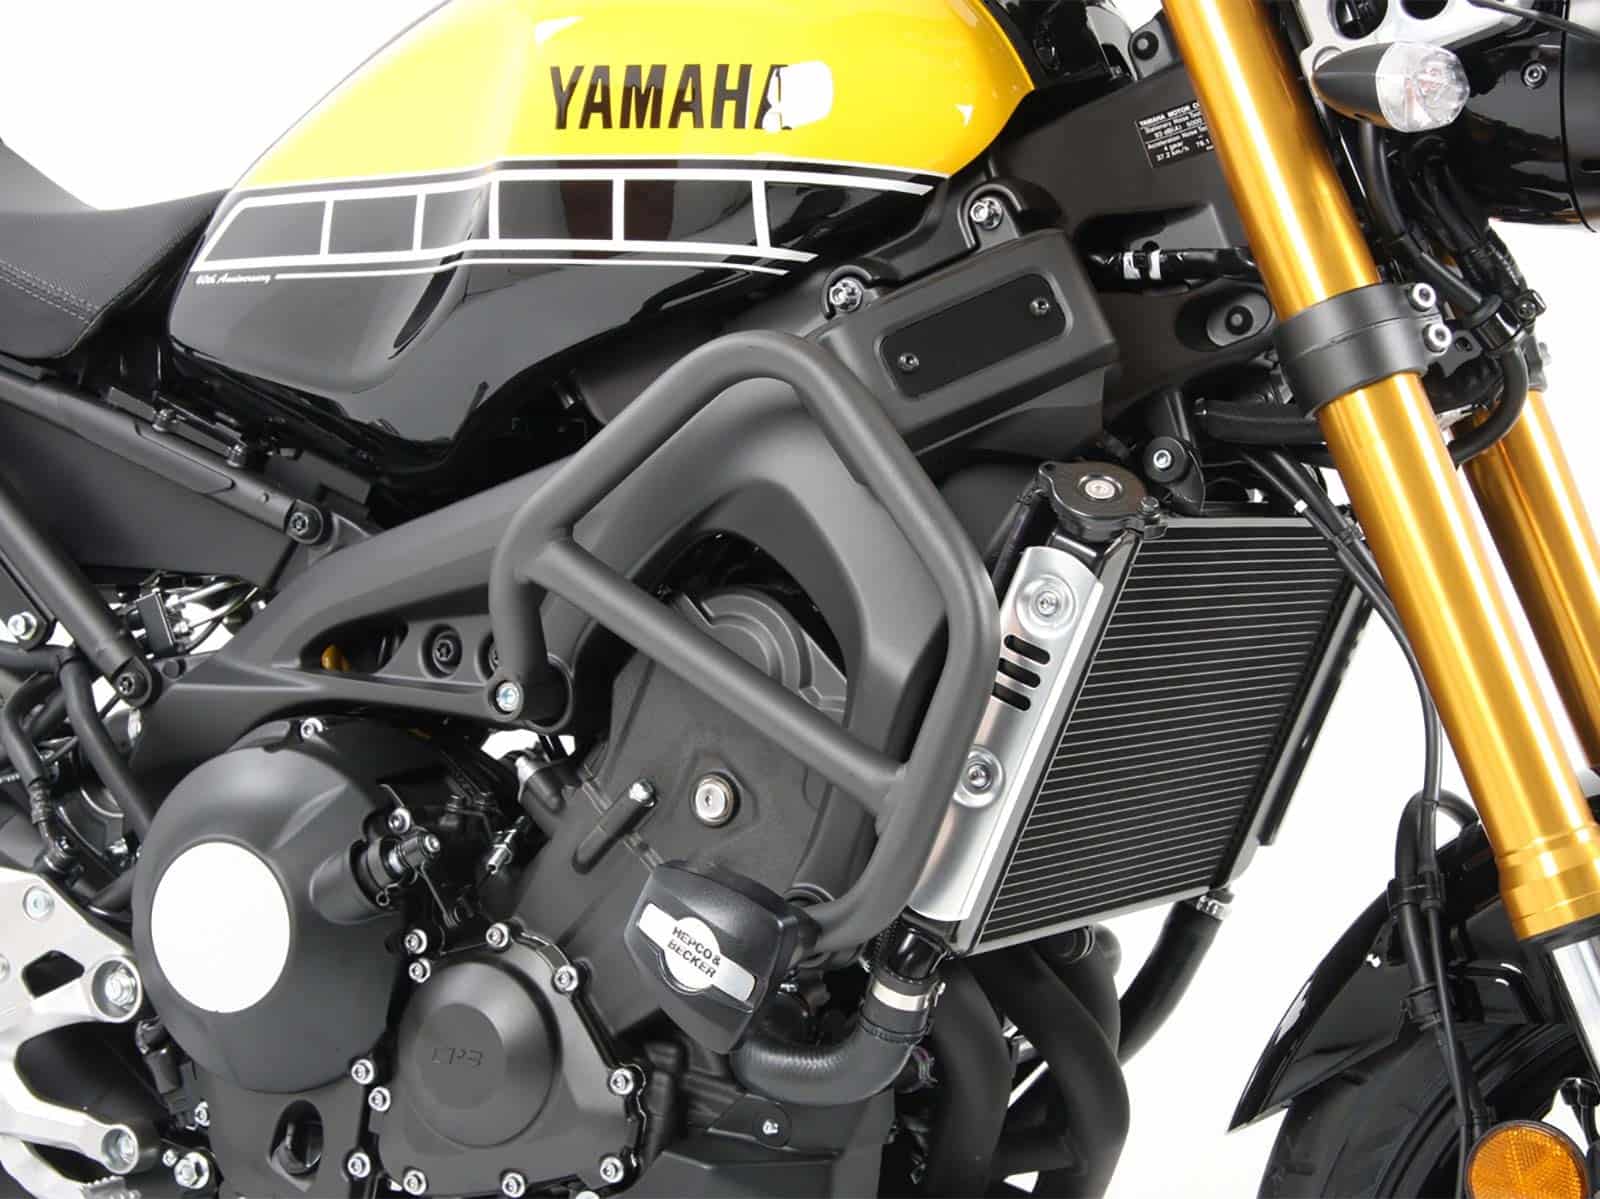 Motorschutzbügel inkl. Protectionpad anthrazit für Yamaha XSR 900 (2016-)